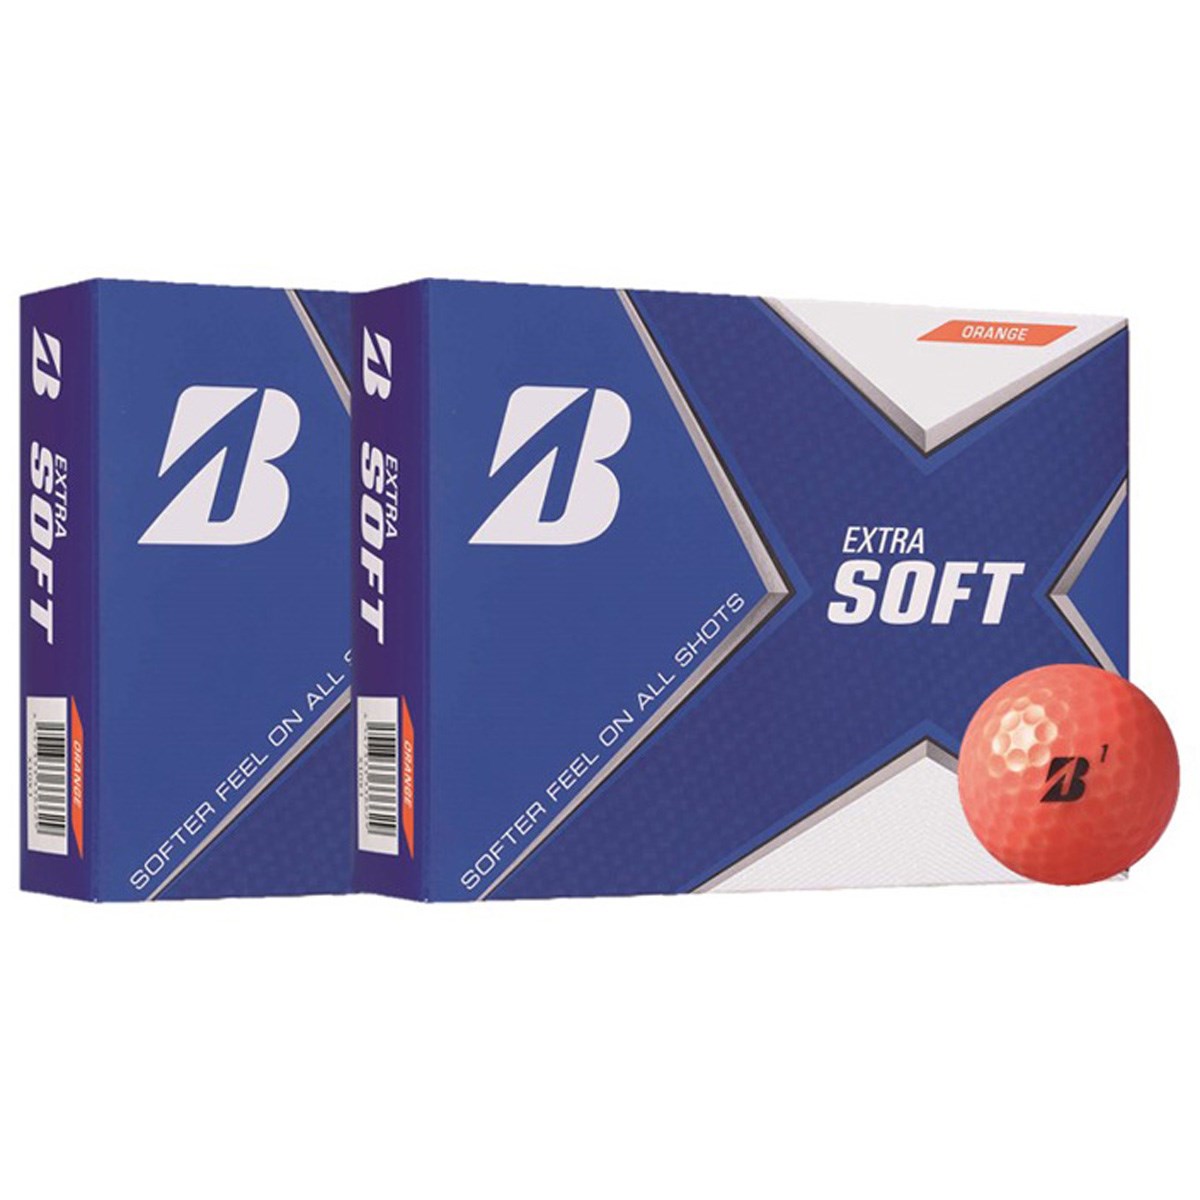 ブリヂストン EXTRA SOFT EXTRA SOFT 2ダースパック 2ダース(24個入り) オレンジ ゴルフボール